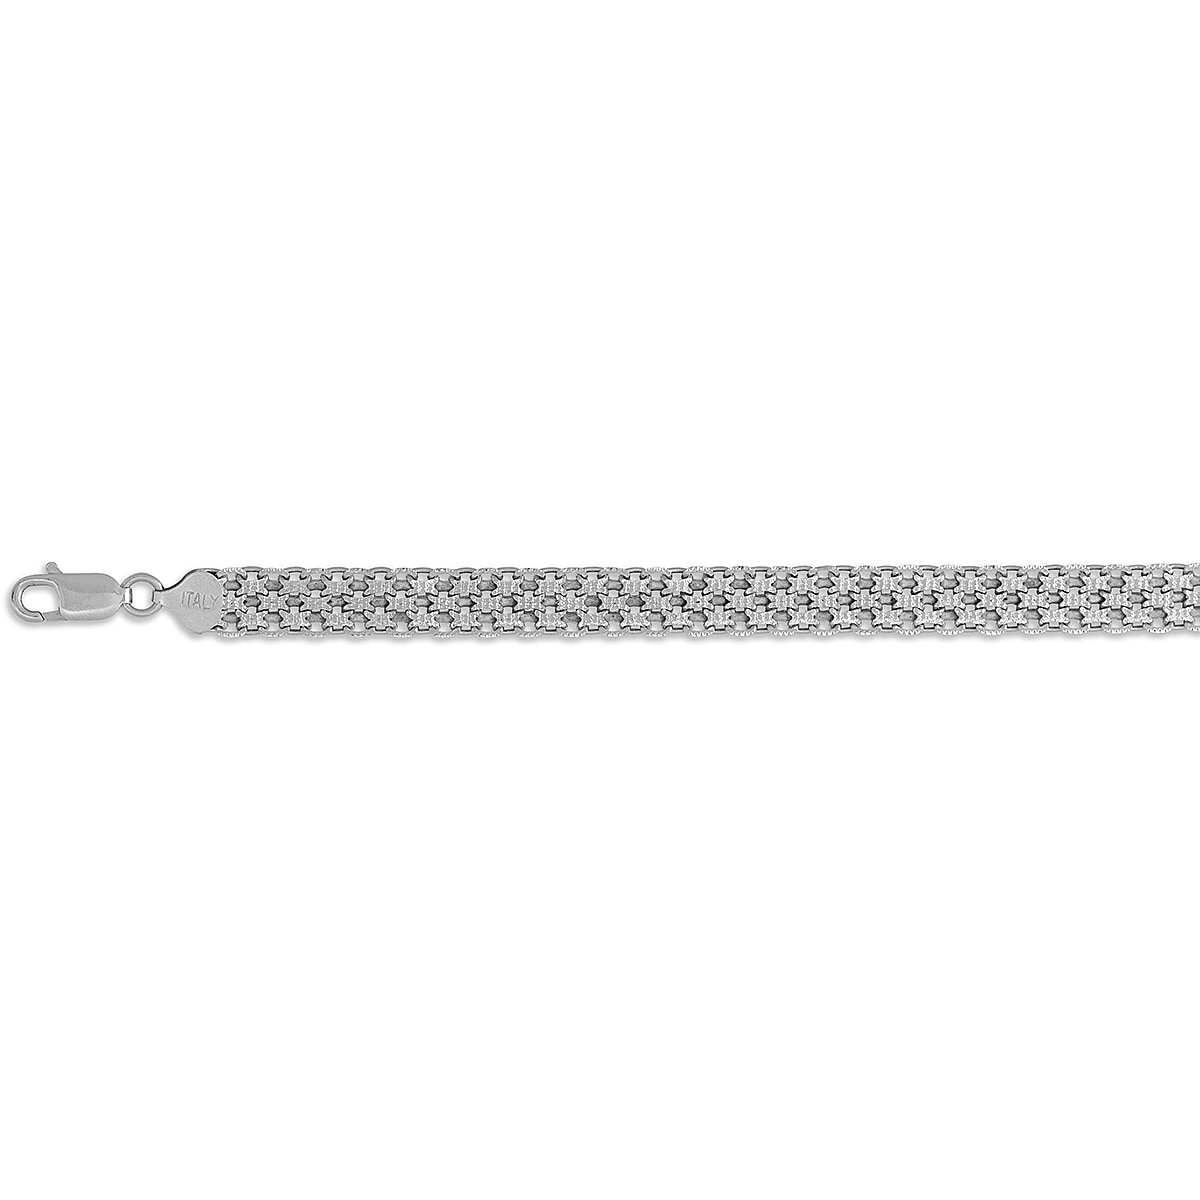 Hatton Garden Closeout - Rhodium Overlay Sterling Silver Bismark Bracelet (Size - 7.5)